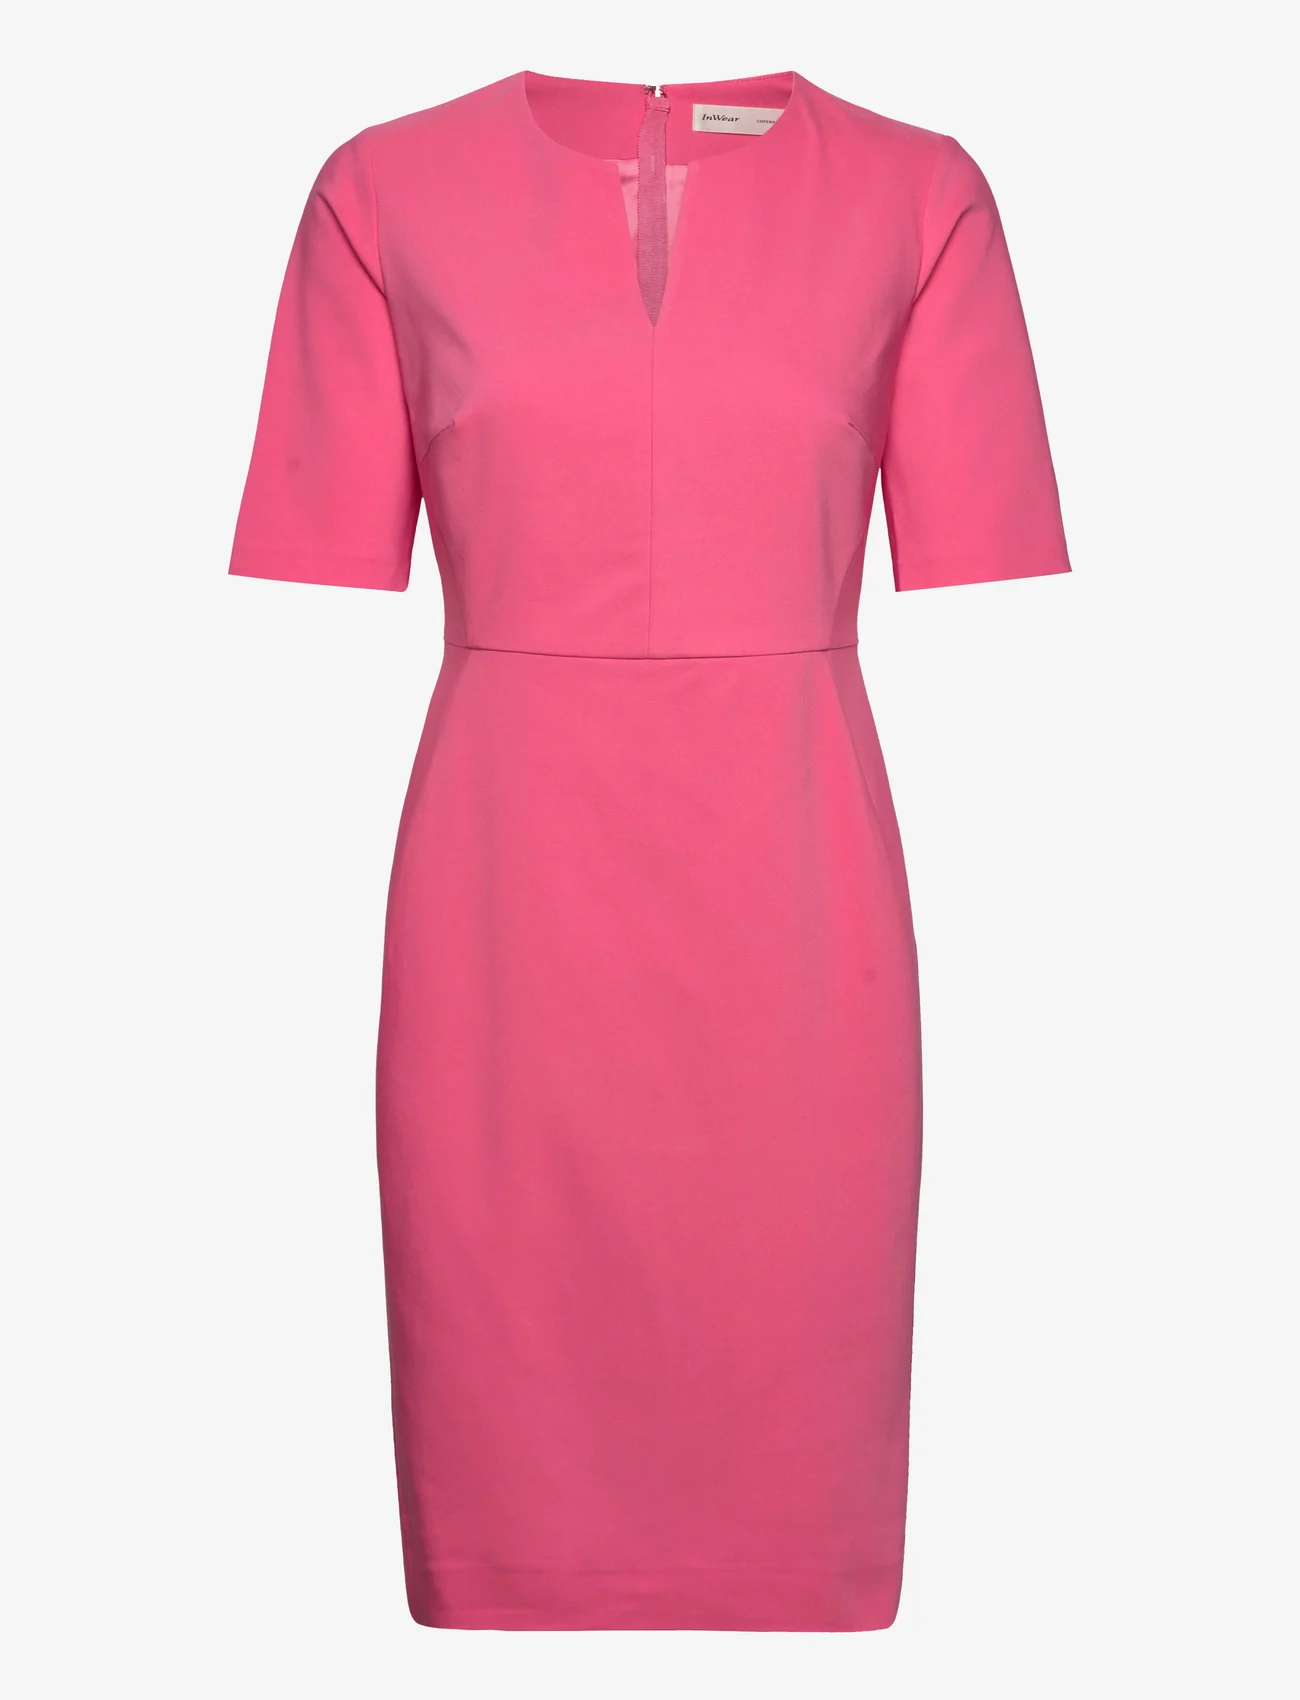 InWear - Zella Dress - festkläder till outletpriser - pink rose - 0